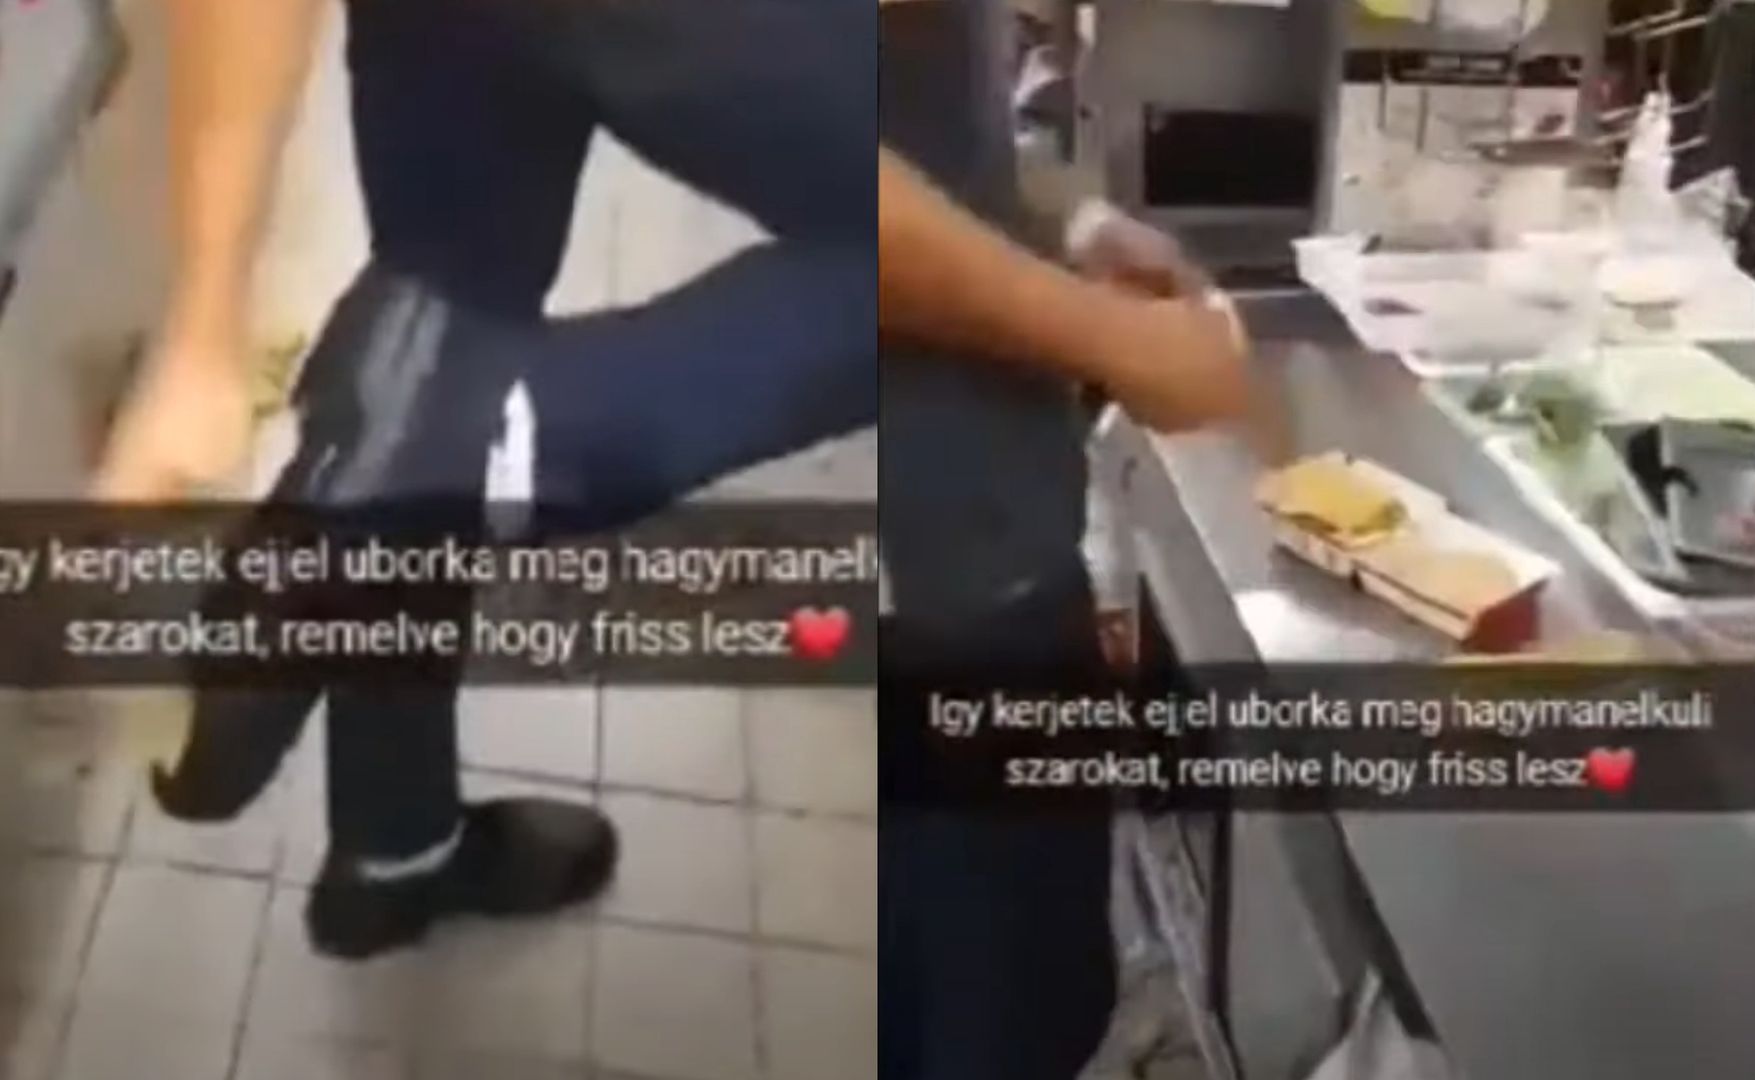 Obrzydliwe zachowanie pracowników McDonald's. Aż robi się niedobrze